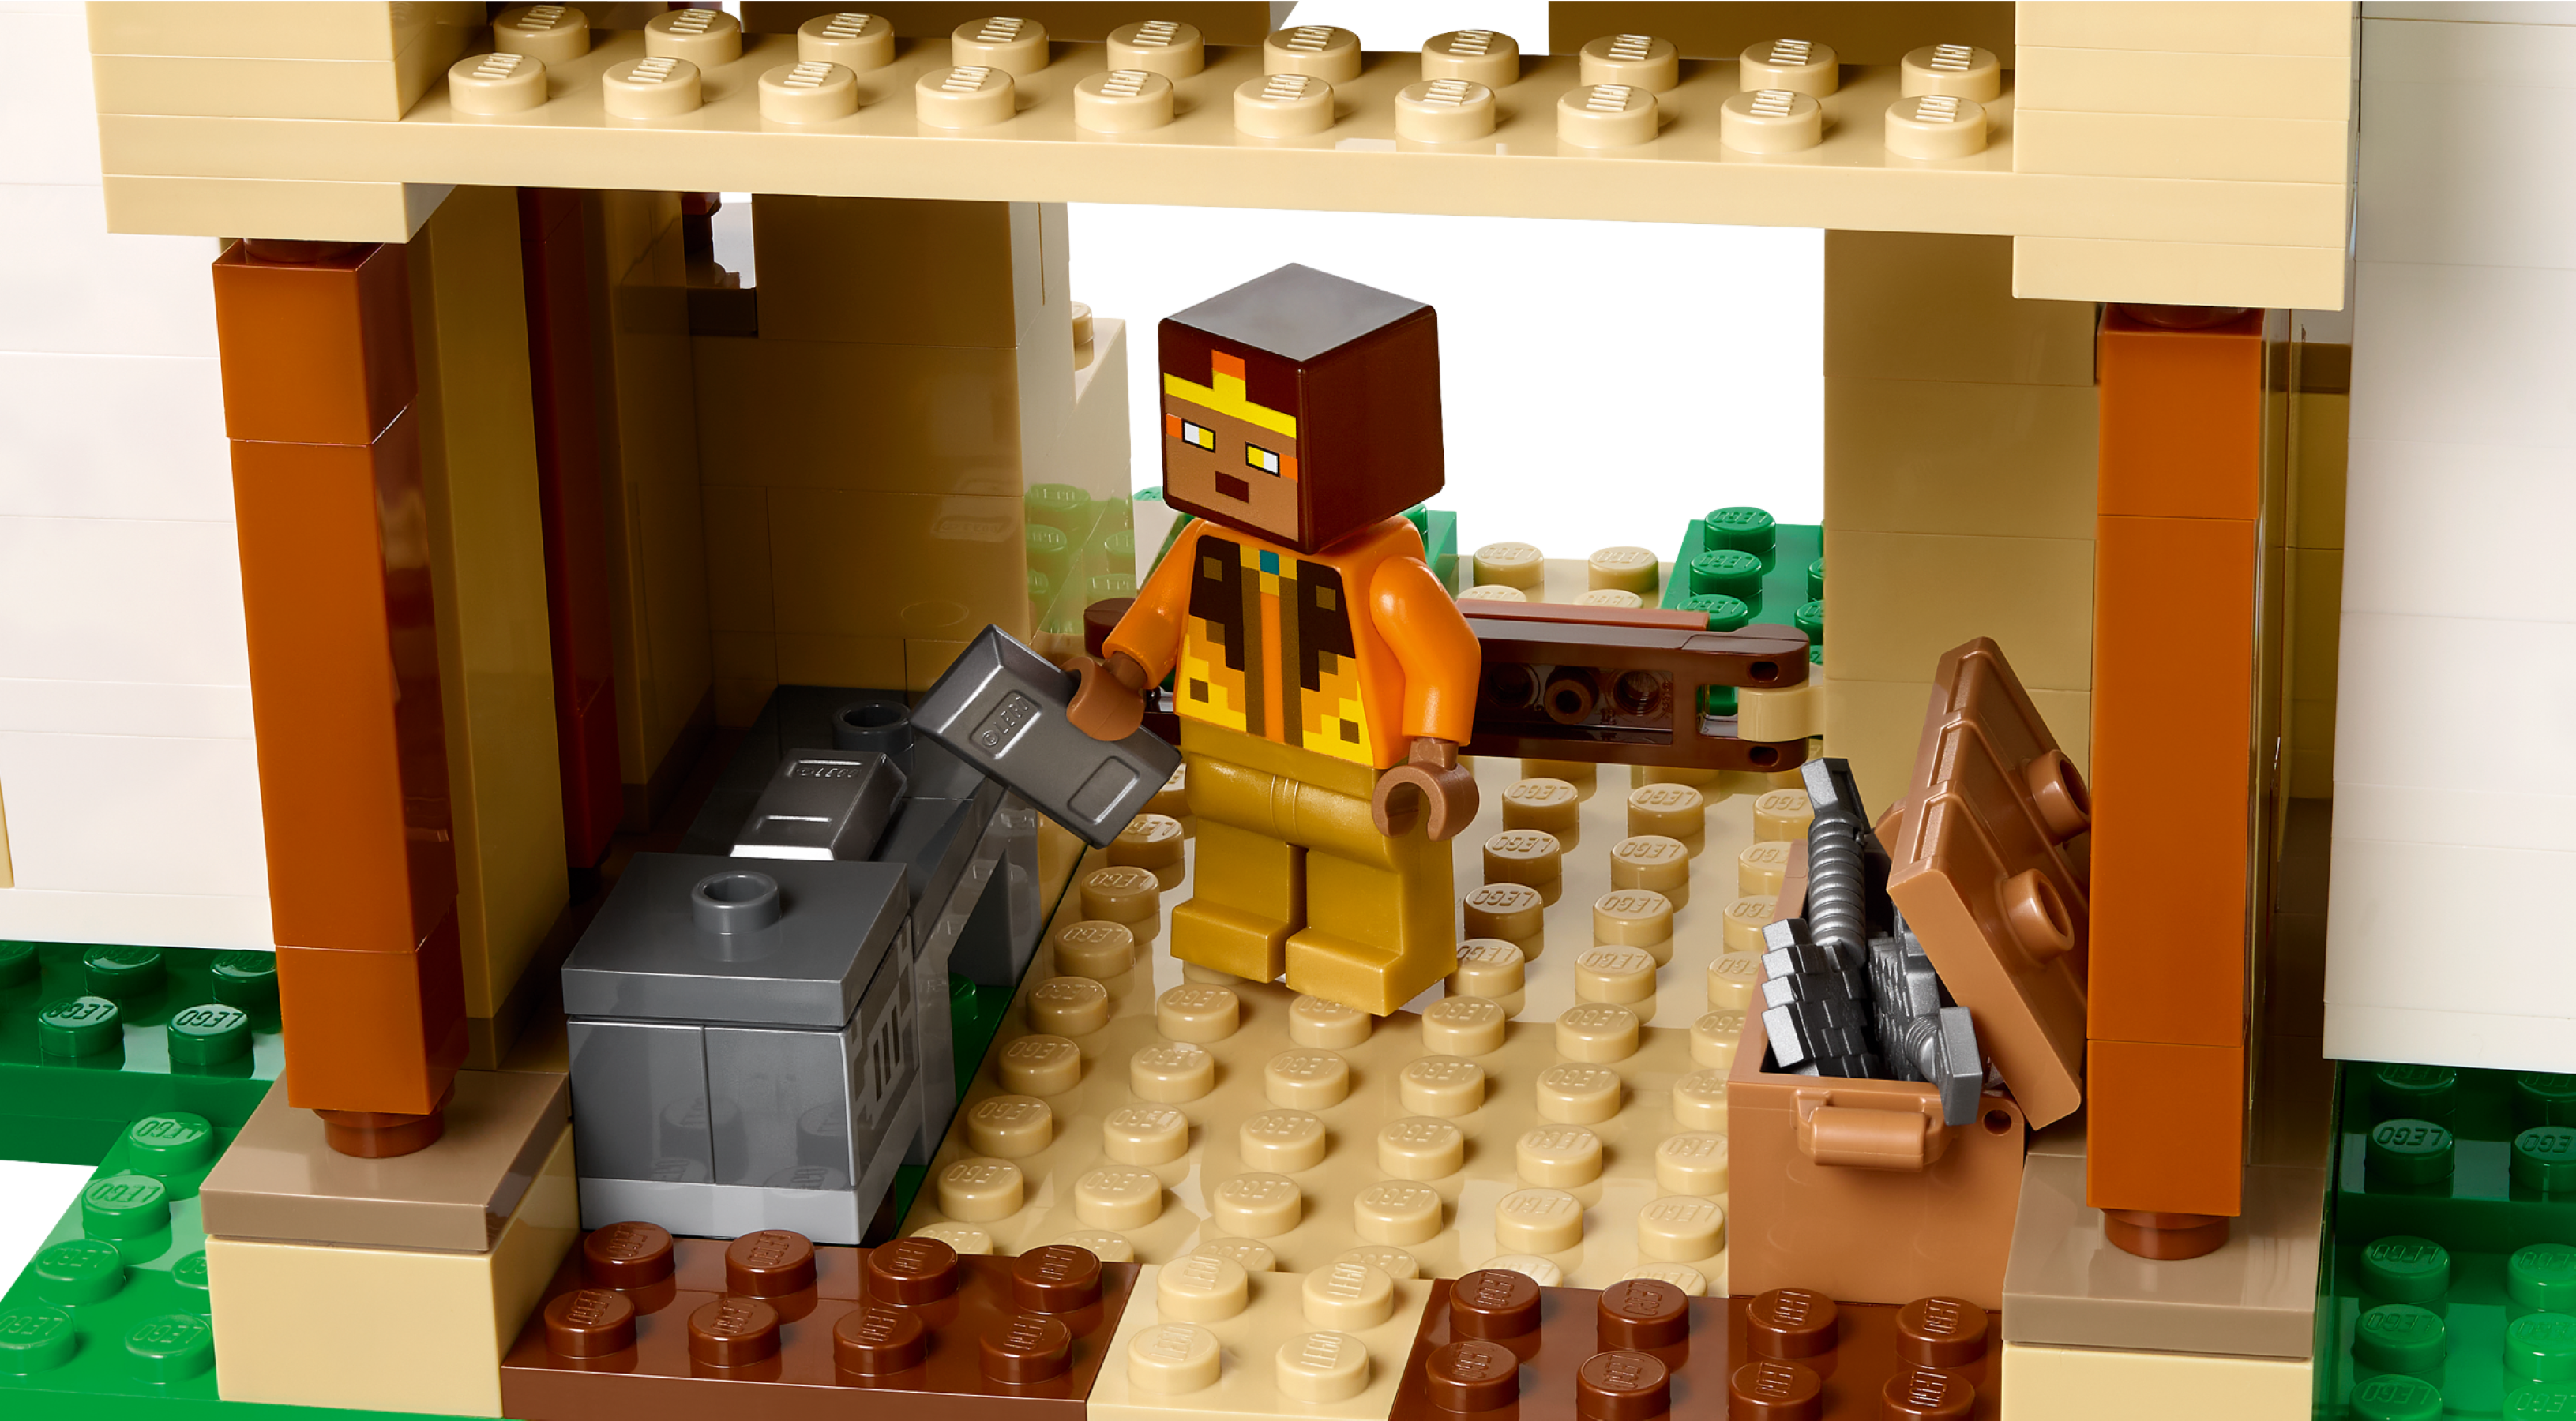 LEGO Minecraft 21250 pas cher, La forteresse du golem de fer